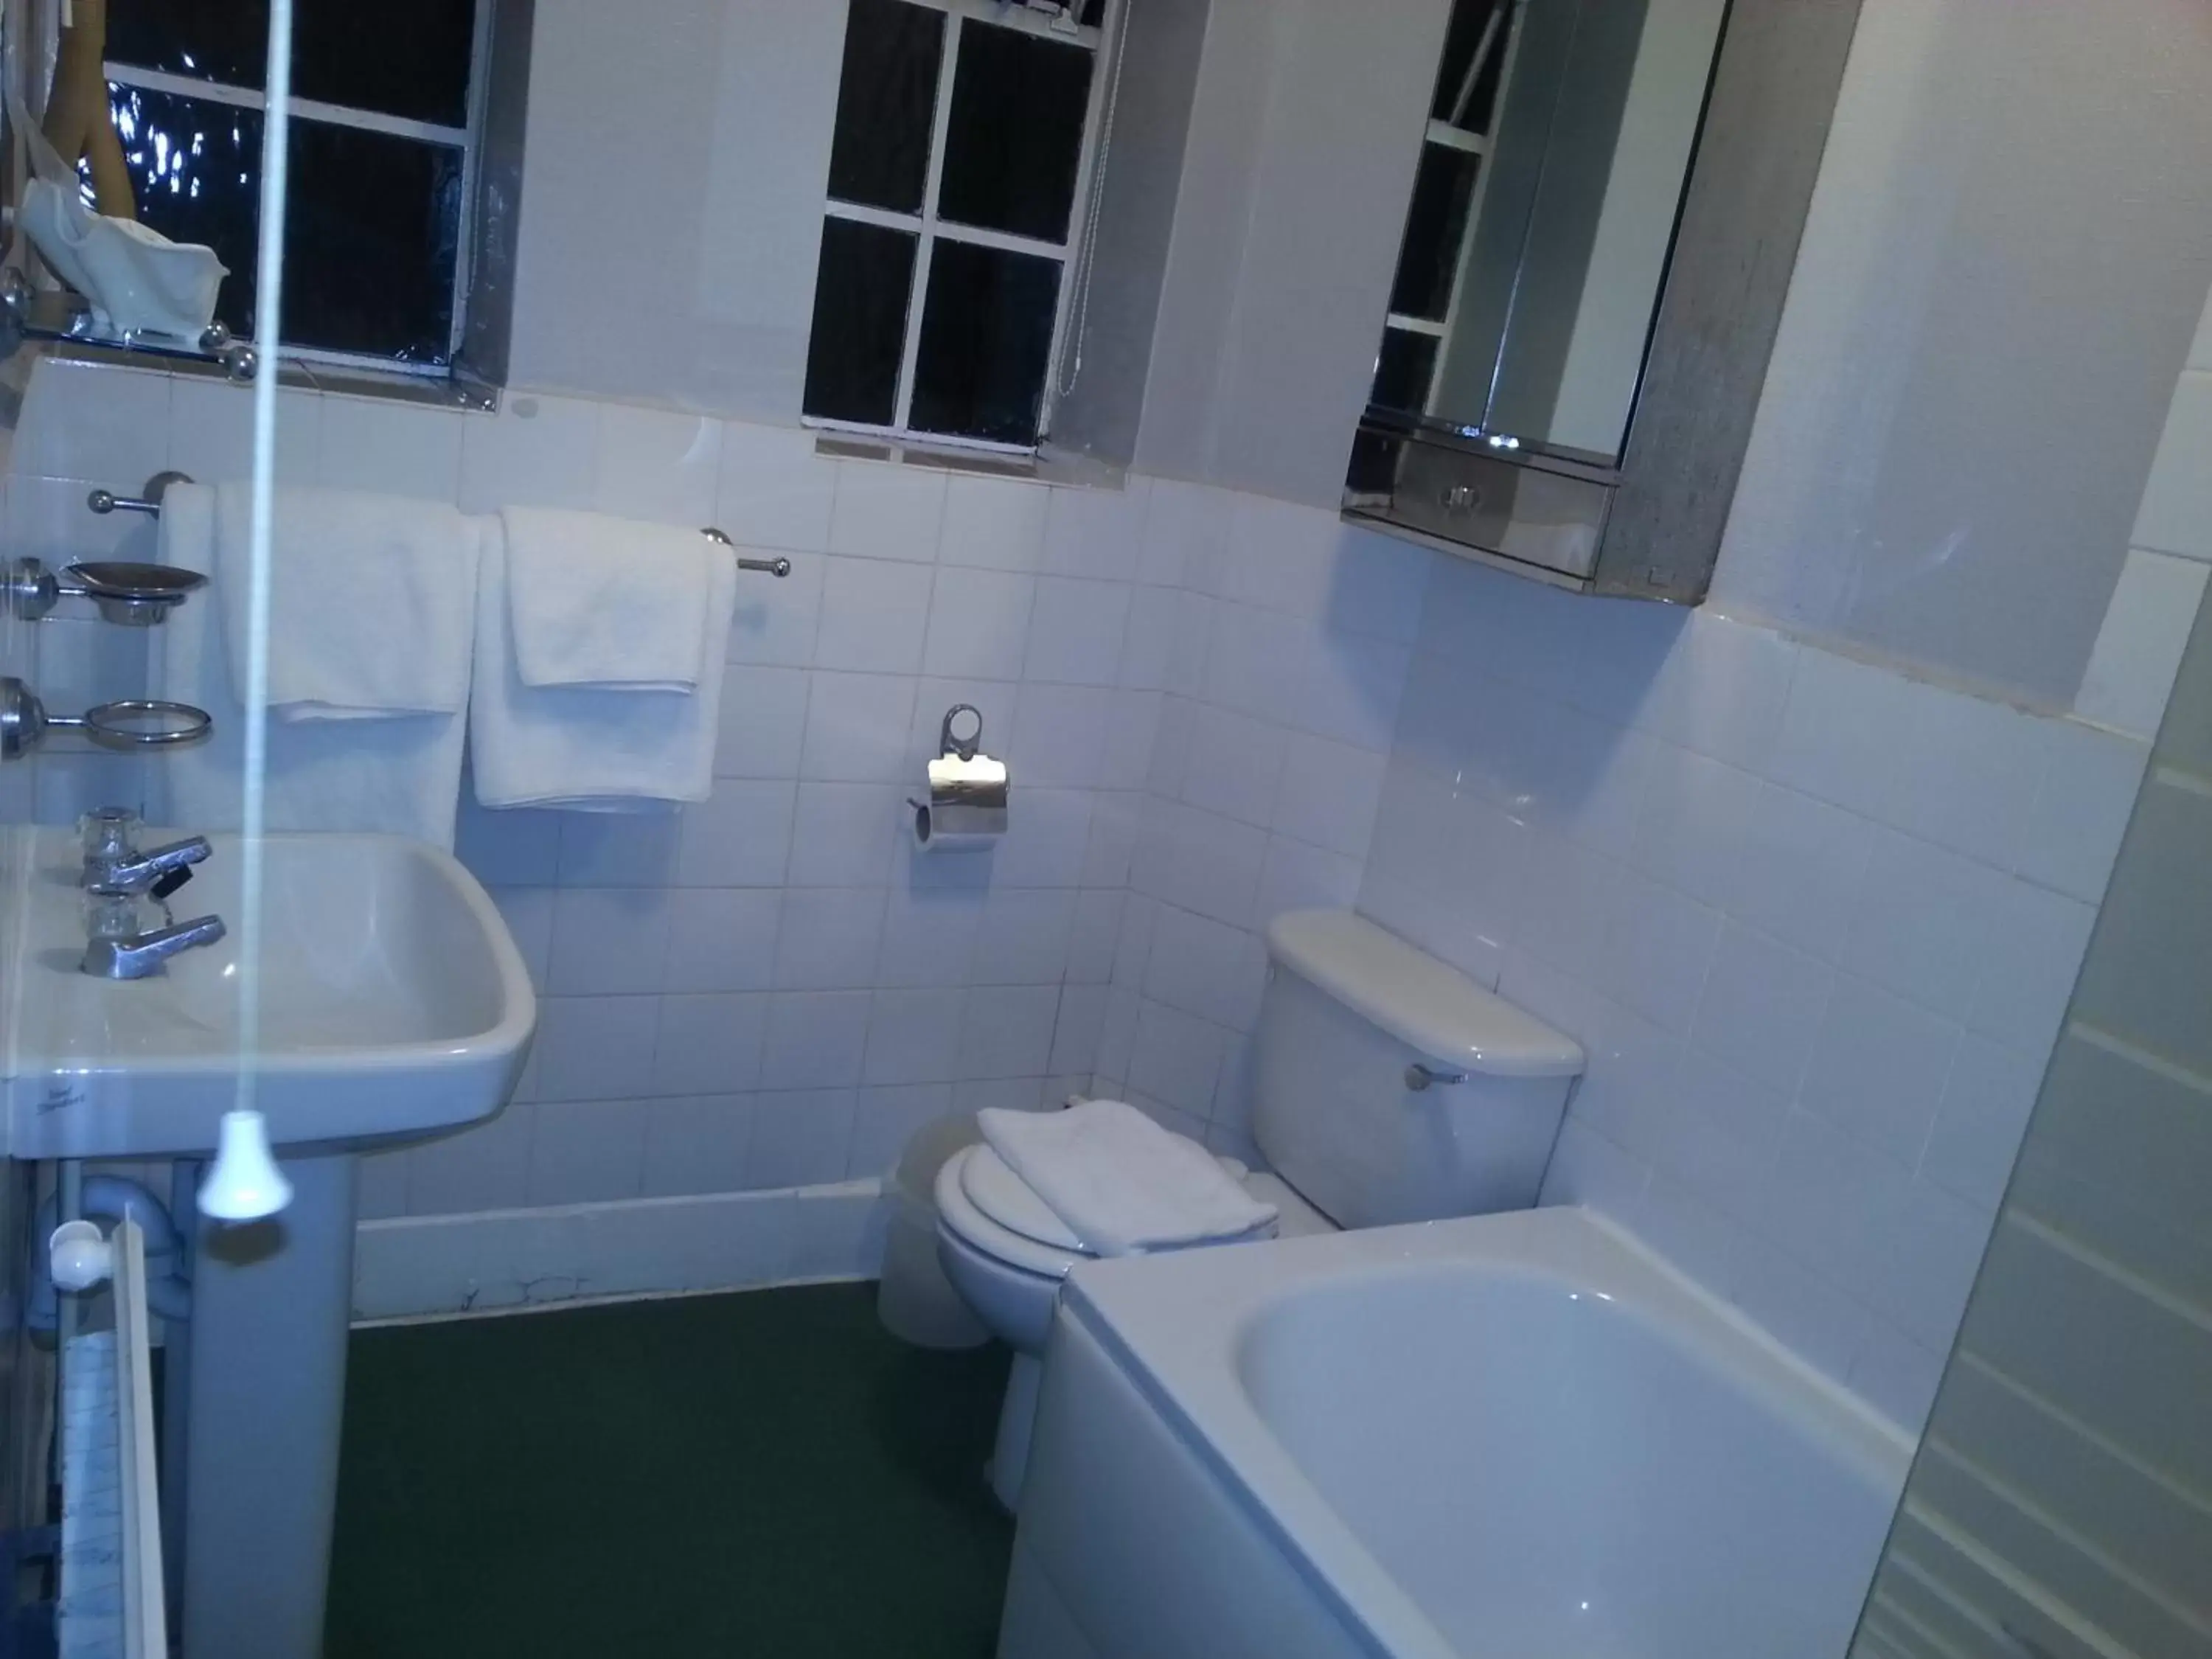 Bathroom in Tree Hotel at Iffley